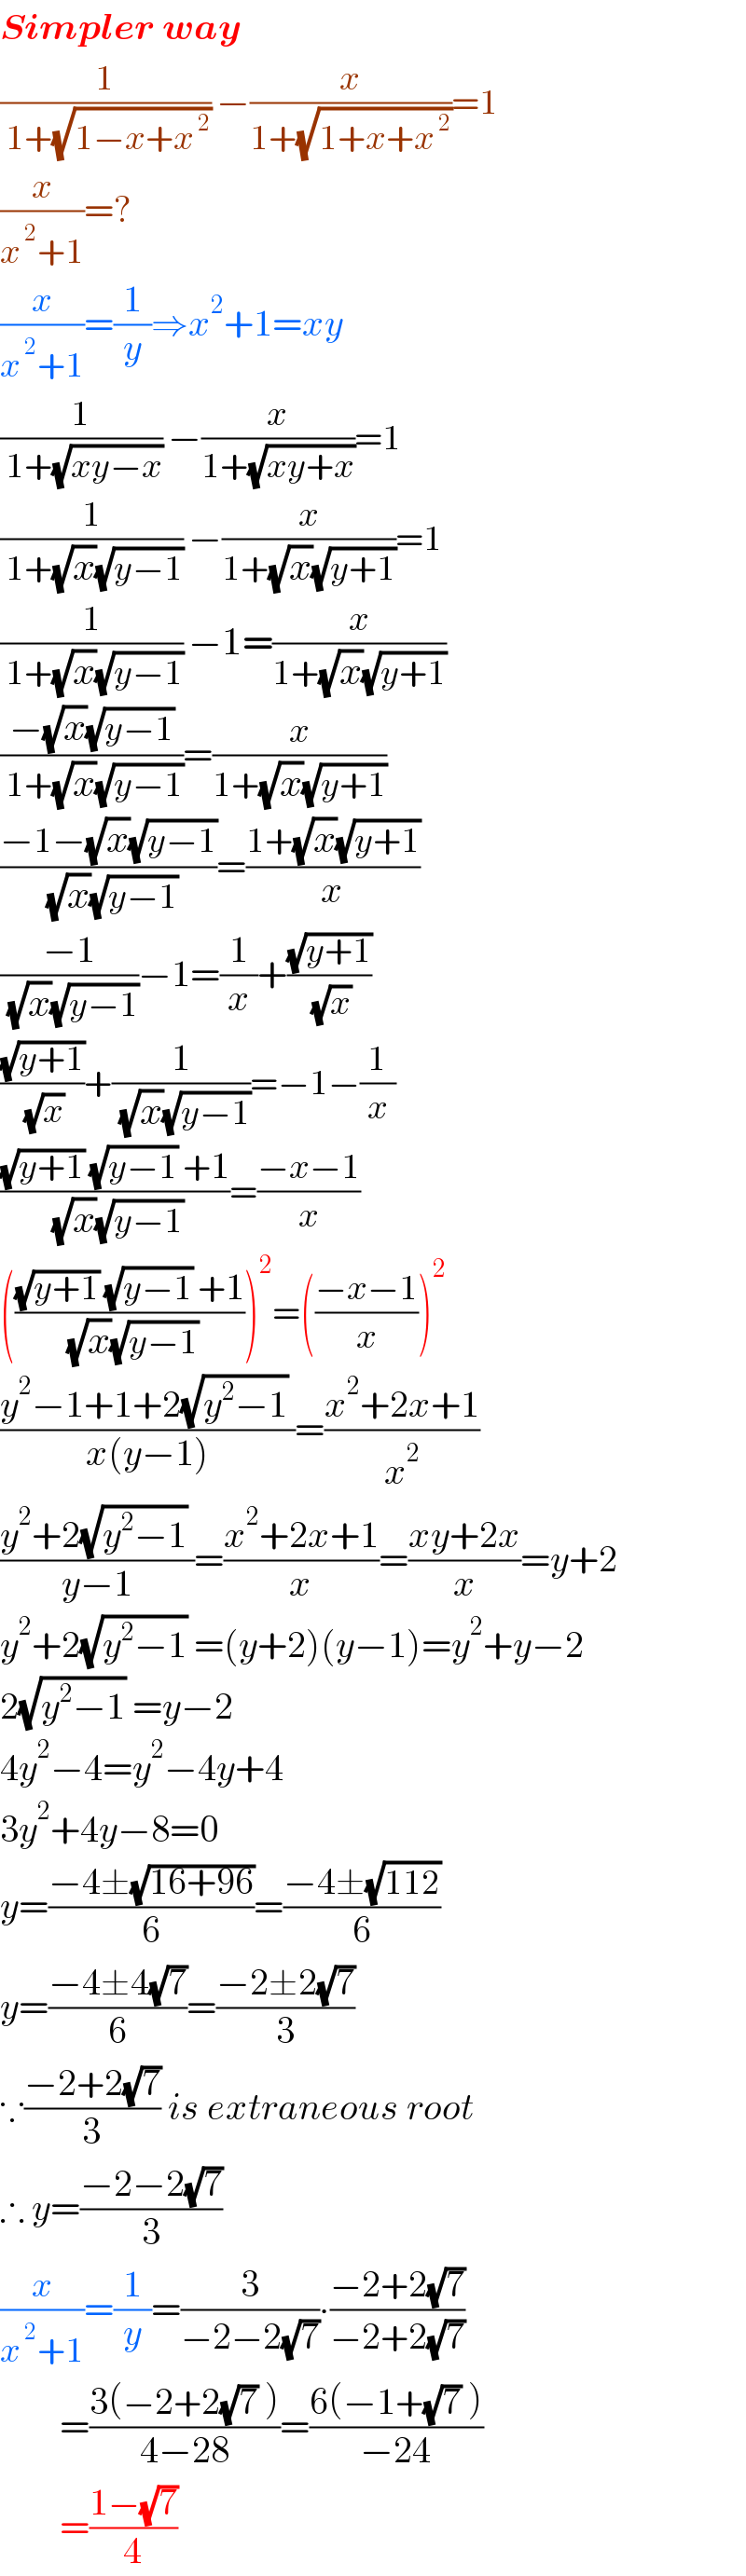 Simpler way  (1/( 1+(√(1−x+x^( 2) )))) −(x/(1+(√(1+x+x^( 2) ))))=1  (x/(x^( 2) +1))=?  (x/(x^( 2) +1))=(1/y)⇒x^2 +1=xy  (1/( 1+(√(xy−x)))) −(x/(1+(√(xy+x))))=1  (1/( 1+(√x)(√(y−1)))) −(x/(1+(√x)(√(y+1))))=1  (1/( 1+(√x)(√(y−1)))) −1=(x/(1+(√x)(√(y+1))))  ((−(√x)(√(y−1)))/( 1+(√x)(√(y−1))))=(x/(1+(√x)(√(y+1))))  ((−1−(√x)(√(y−1)))/( (√x)(√(y−1))))=((1+(√x)(√(y+1)))/x)  ((−1)/( (√x)(√(y−1))))−1=(1/x)+((√(y+1))/( (√x)))  ((√(y+1))/( (√x)))+(1/( (√x)(√(y−1))))=−1−(1/x)  (((√(y+1)) (√(y−1)) +1)/( (√x)(√(y−1))))=((−x−1)/x)  ((((√(y+1)) (√(y−1)) +1)/( (√x)(√(y−1)))))^2 =(((−x−1)/x))^2   ((y^2 −1+1+2(√(y^2 −1)) )/(x(y−1)))=((x^2 +2x+1)/x^2 )  ((y^2 +2(√(y^2 −1)) )/(y−1))=((x^2 +2x+1)/x)=((xy+2x)/x)=y+2  y^2 +2(√(y^2 −1)) =(y+2)(y−1)=y^2 +y−2  2(√(y^2 −1)) =y−2  4y^2 −4=y^2 −4y+4  3y^2 +4y−8=0  y=((−4±(√(16+96)))/6)=((−4±(√(112)))/6)  y=((−4±4(√7))/6)=((−2±2(√7))/3)  ∵((−2+2(√7))/3) is extraneous root  ∴ y=((−2−2(√7))/3)  (x/(x^( 2) +1))=(1/y)=(3/(−2−2(√7)))∙((−2+2(√7))/(−2+2(√7)))          =((3(−2+2(√7) ))/(4−28))=((6(−1+(√7) ))/(−24))          =((1−(√7))/4)  